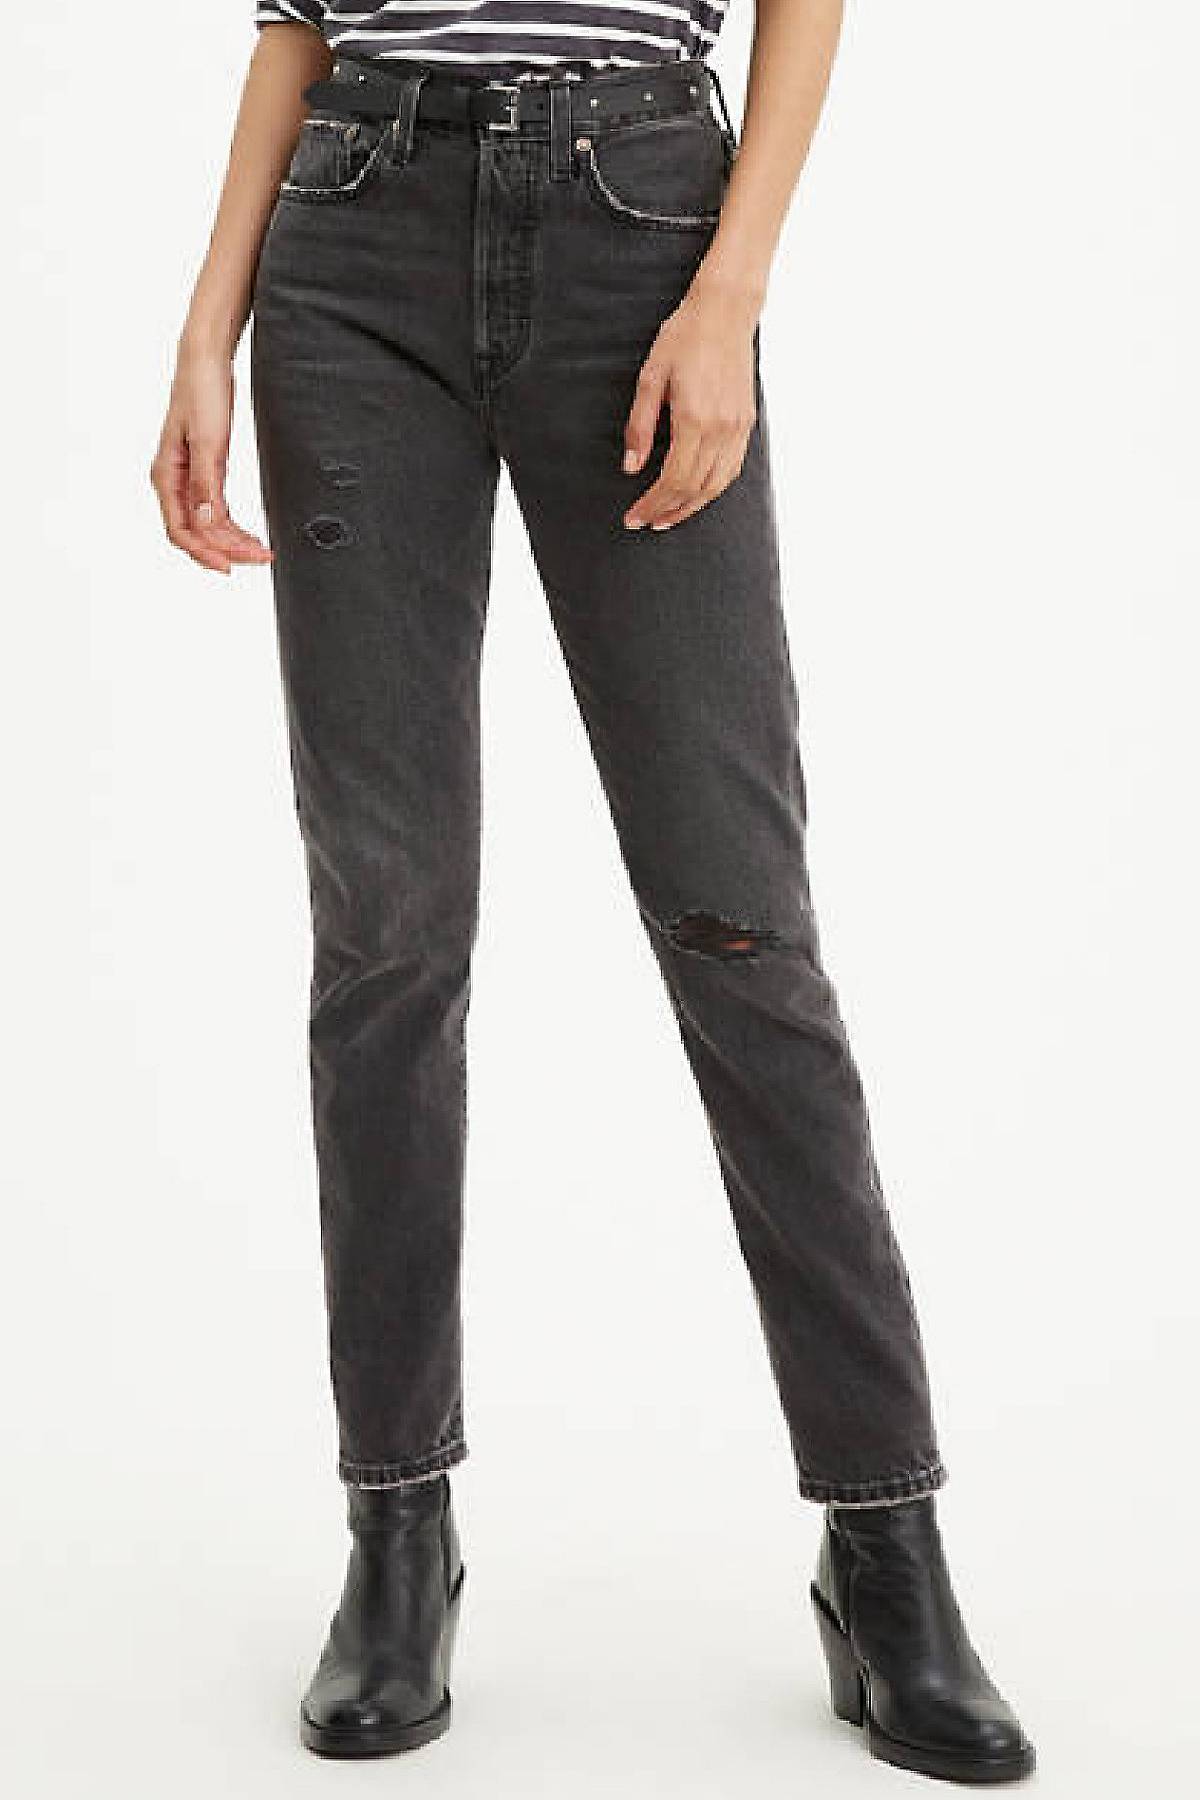 Model wearing 501 skinny jeans